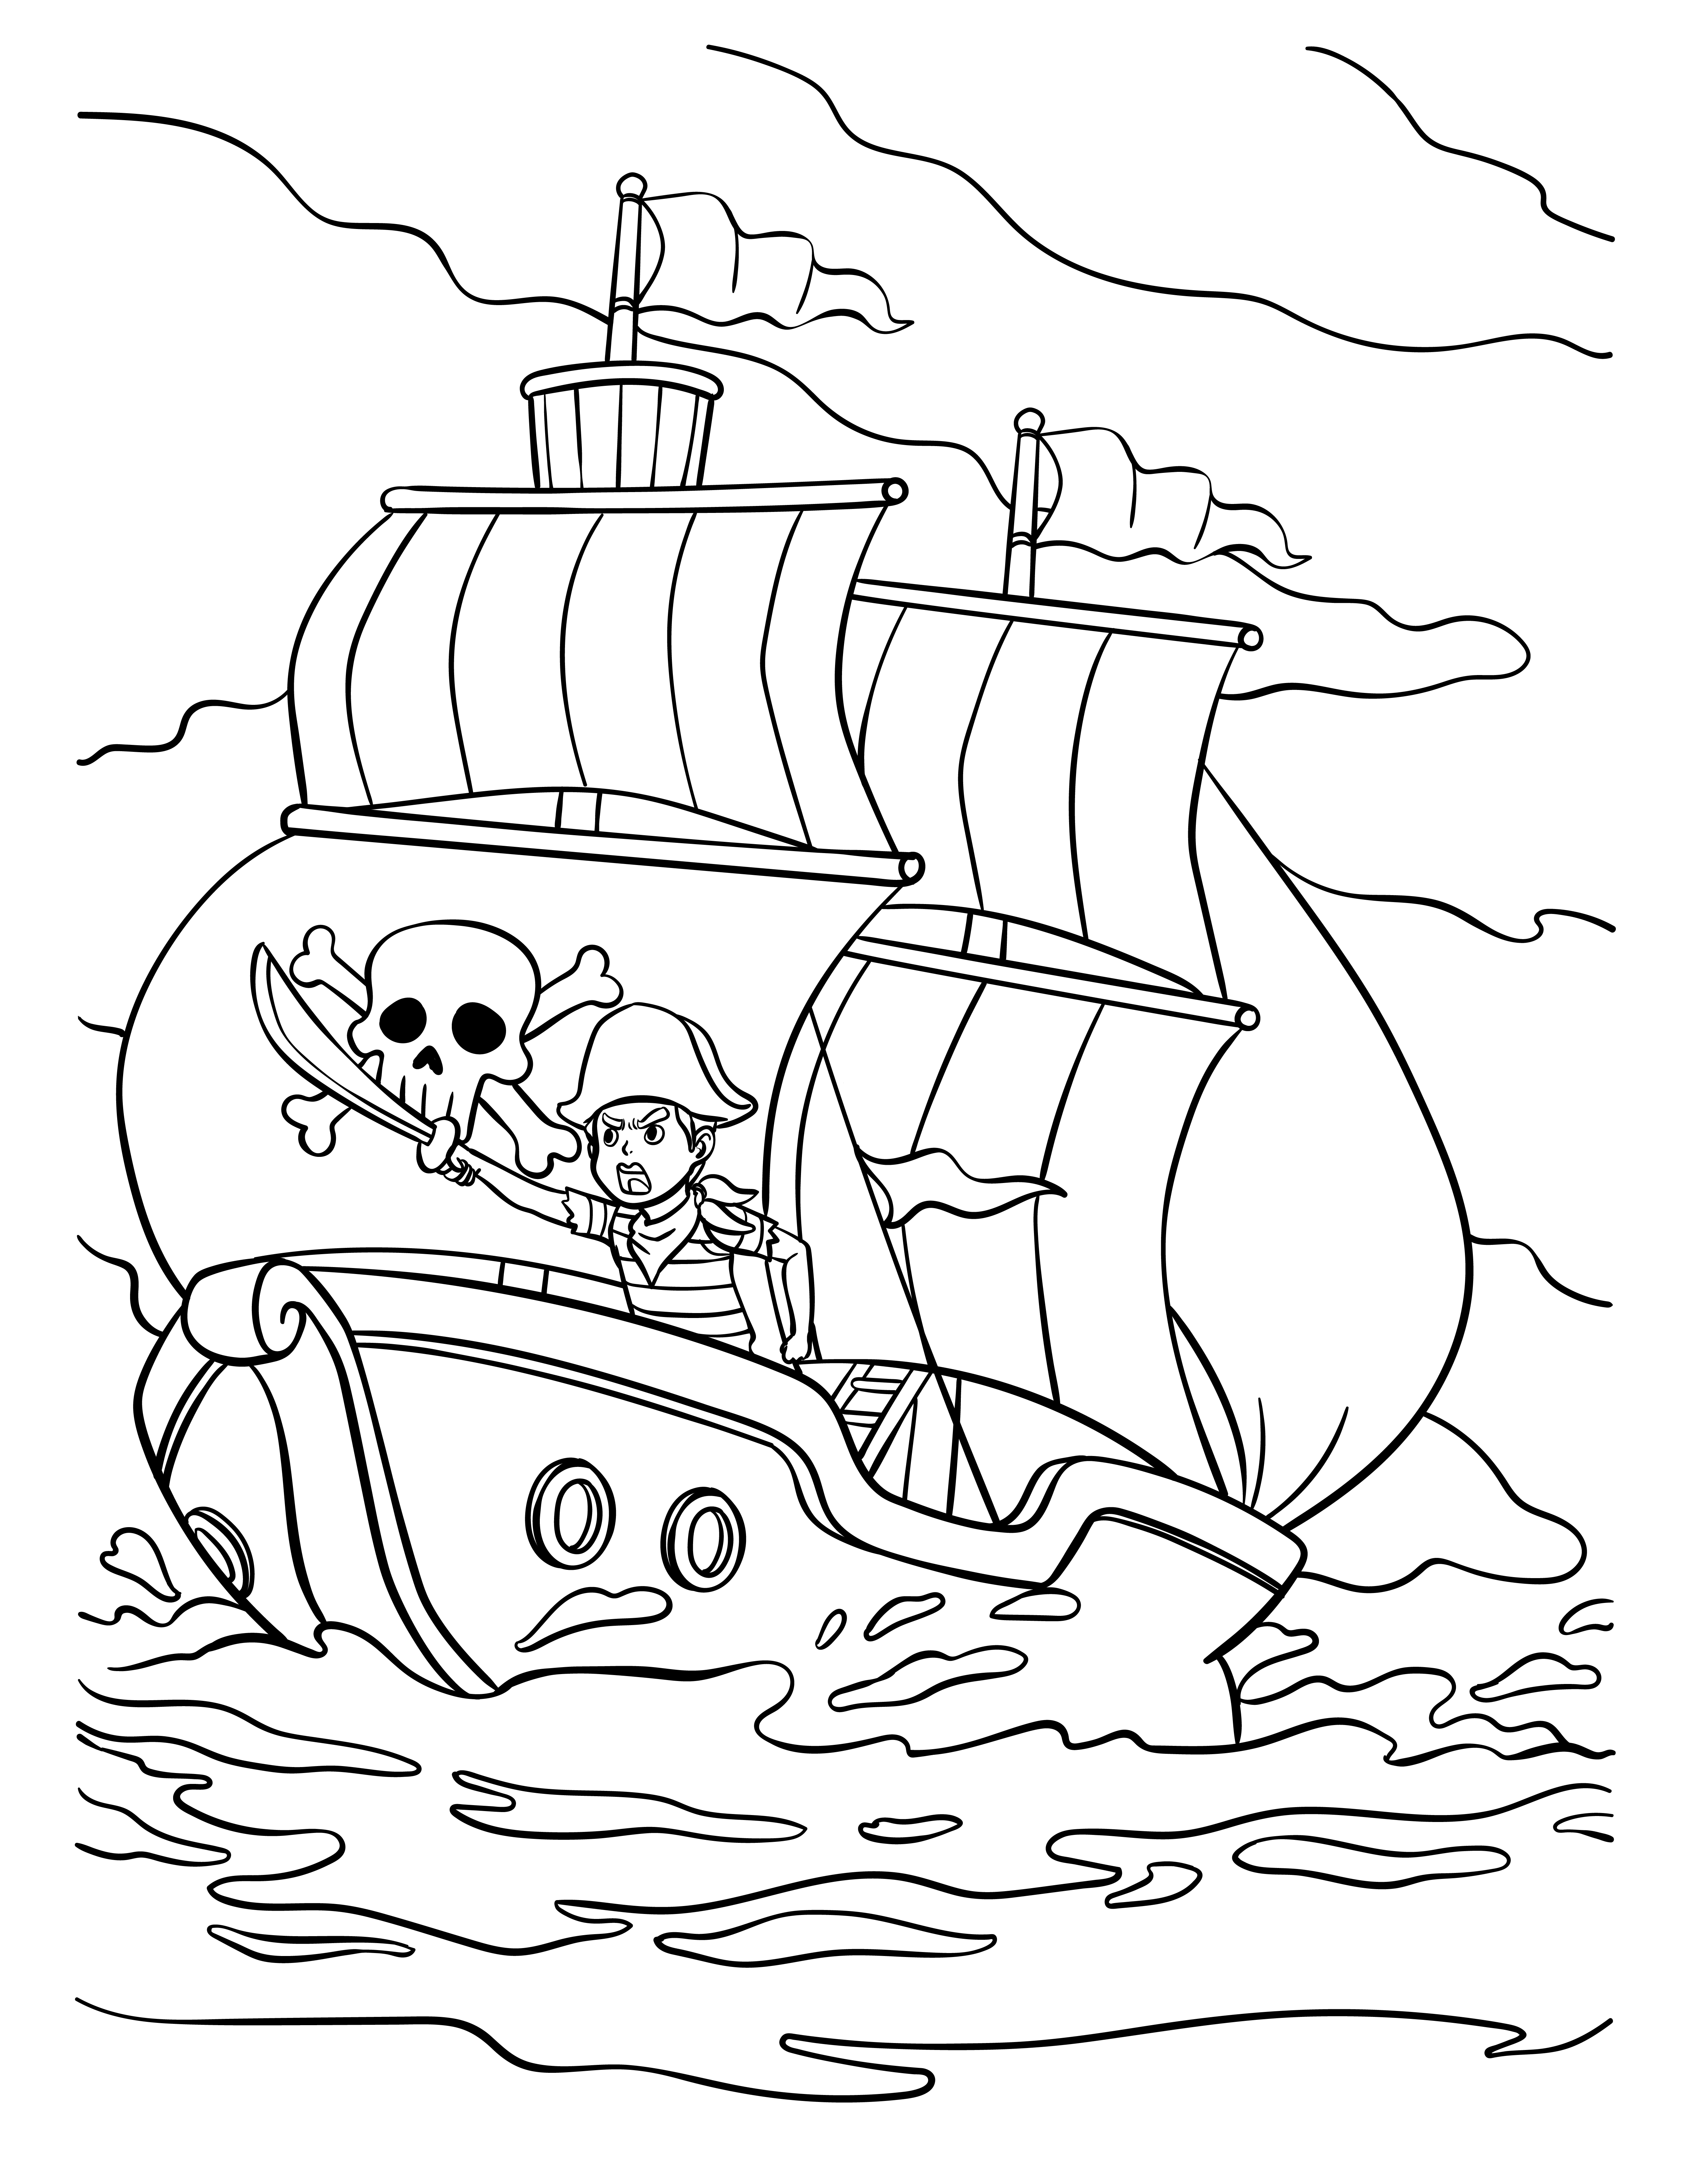 Раскраска корабль пиратов формата А4 в высоком качестве